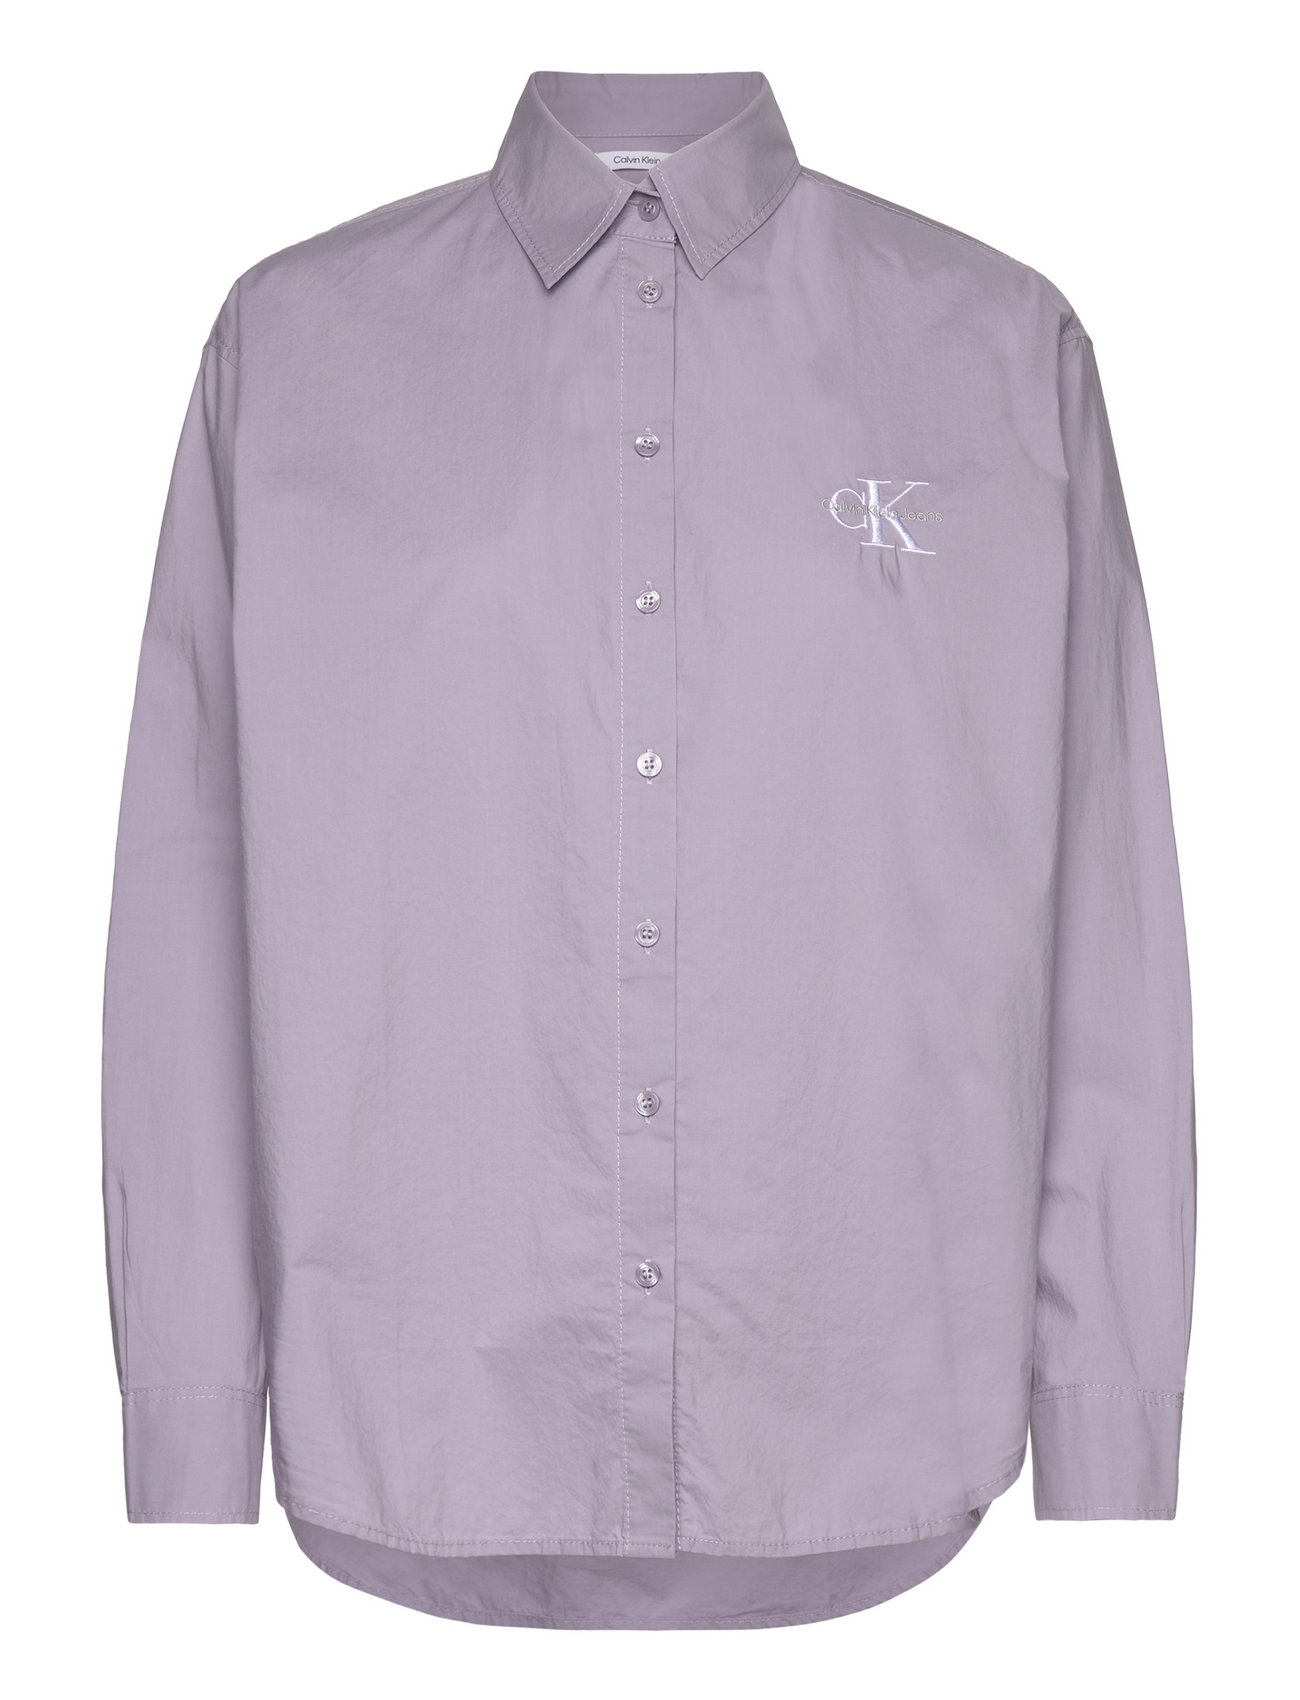 Calvin Klein Jeans Monologo – Booztlet blusen Shirt Relaxed & hemden bei einkaufen –